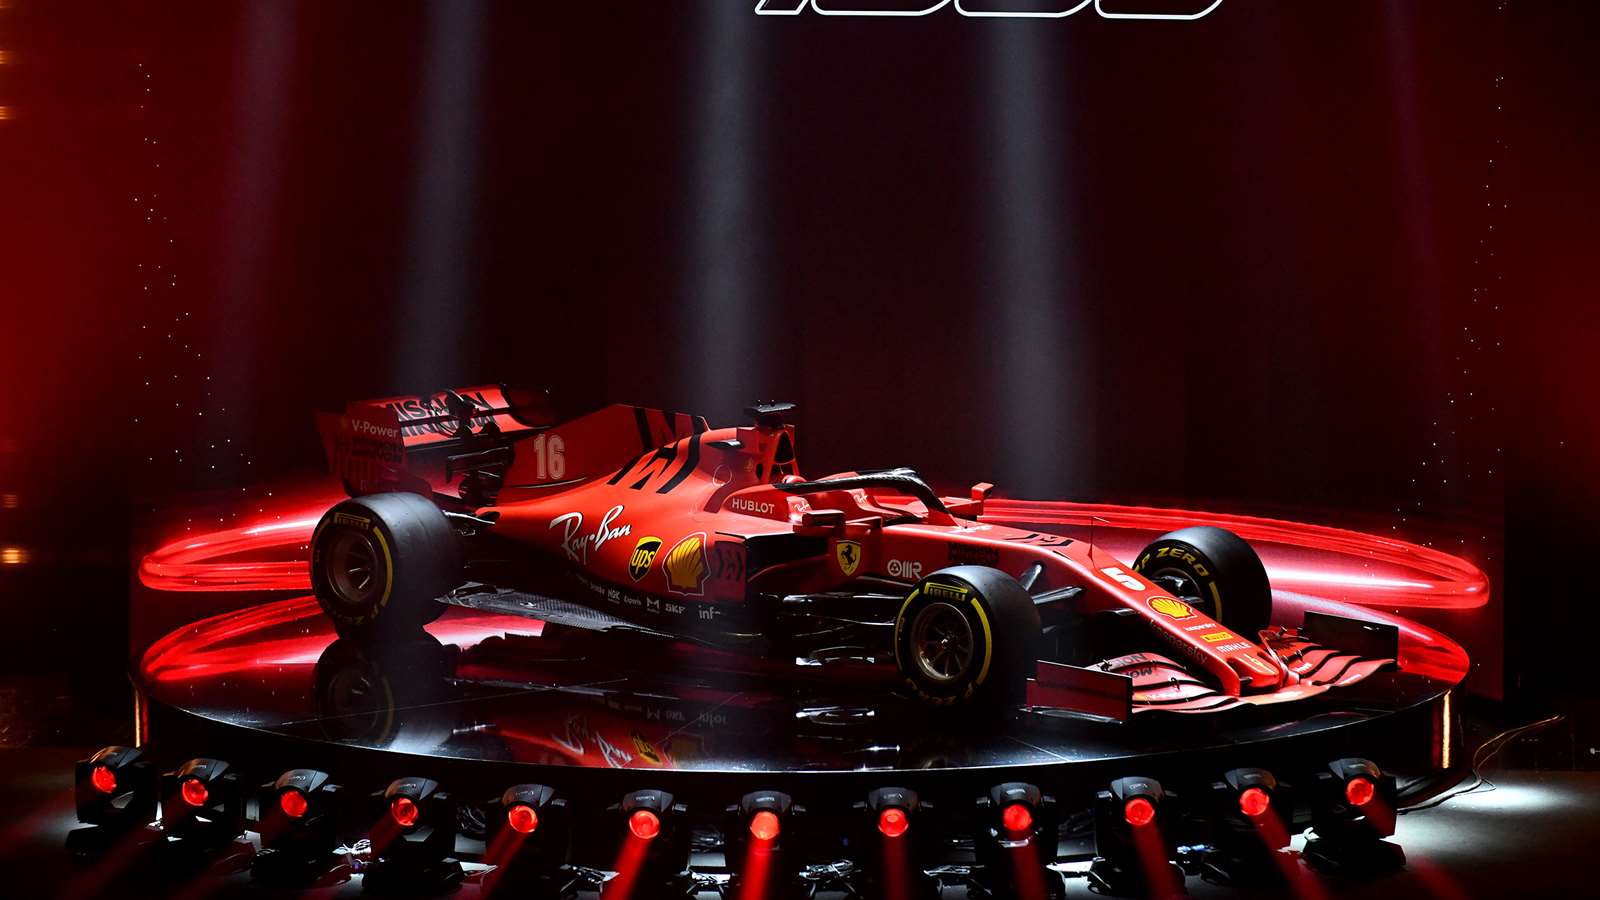 Gallery The Ferrari Sf1000 2020 Formula 1 Car Grr